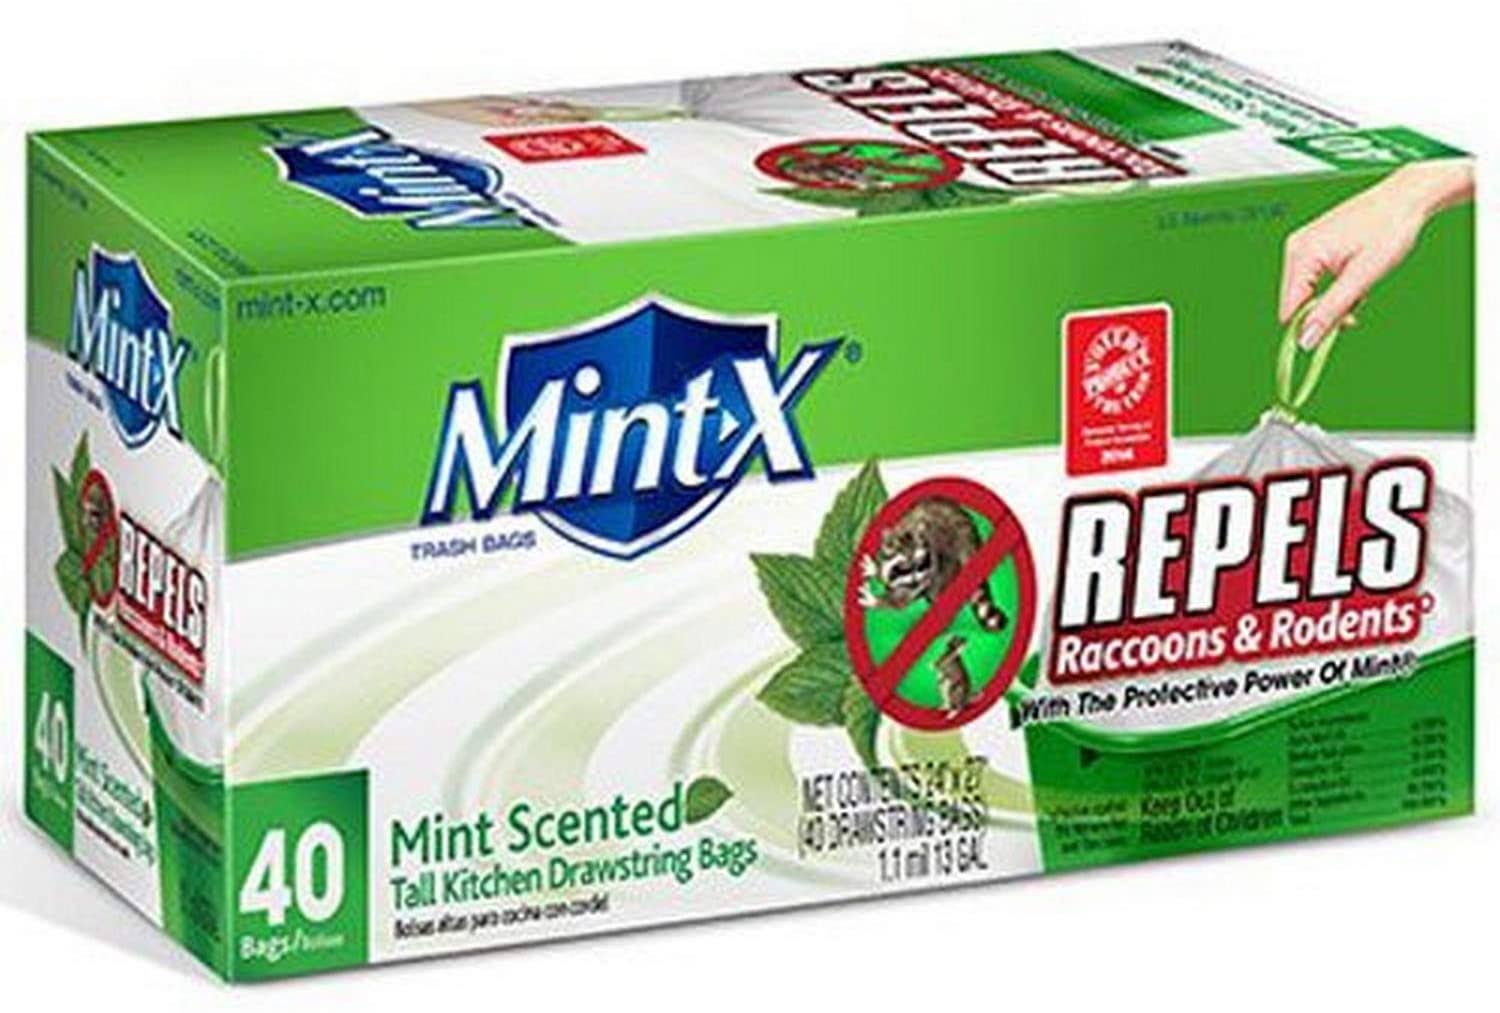 Mint-X Plastic Drawstring Rodent Repellent Trash Bag - 33gl, 40 Count